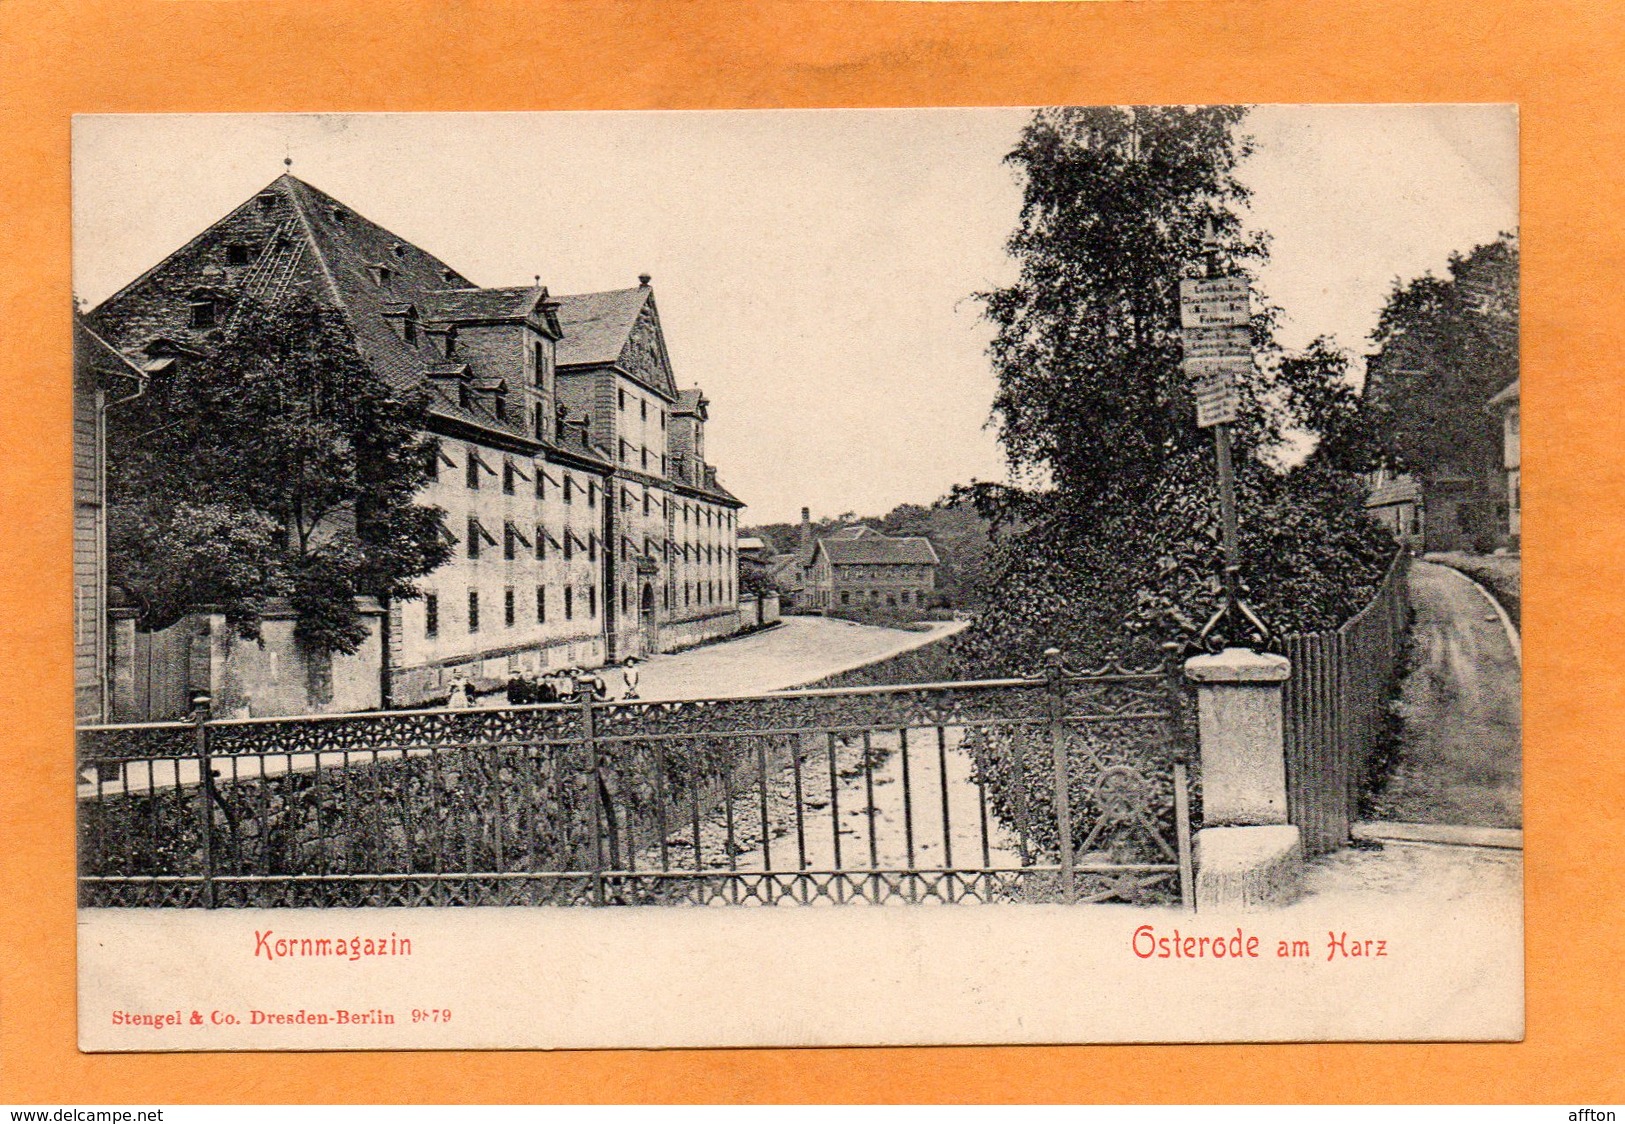 Osterode Am Harz 1905 Postcard - Osterode